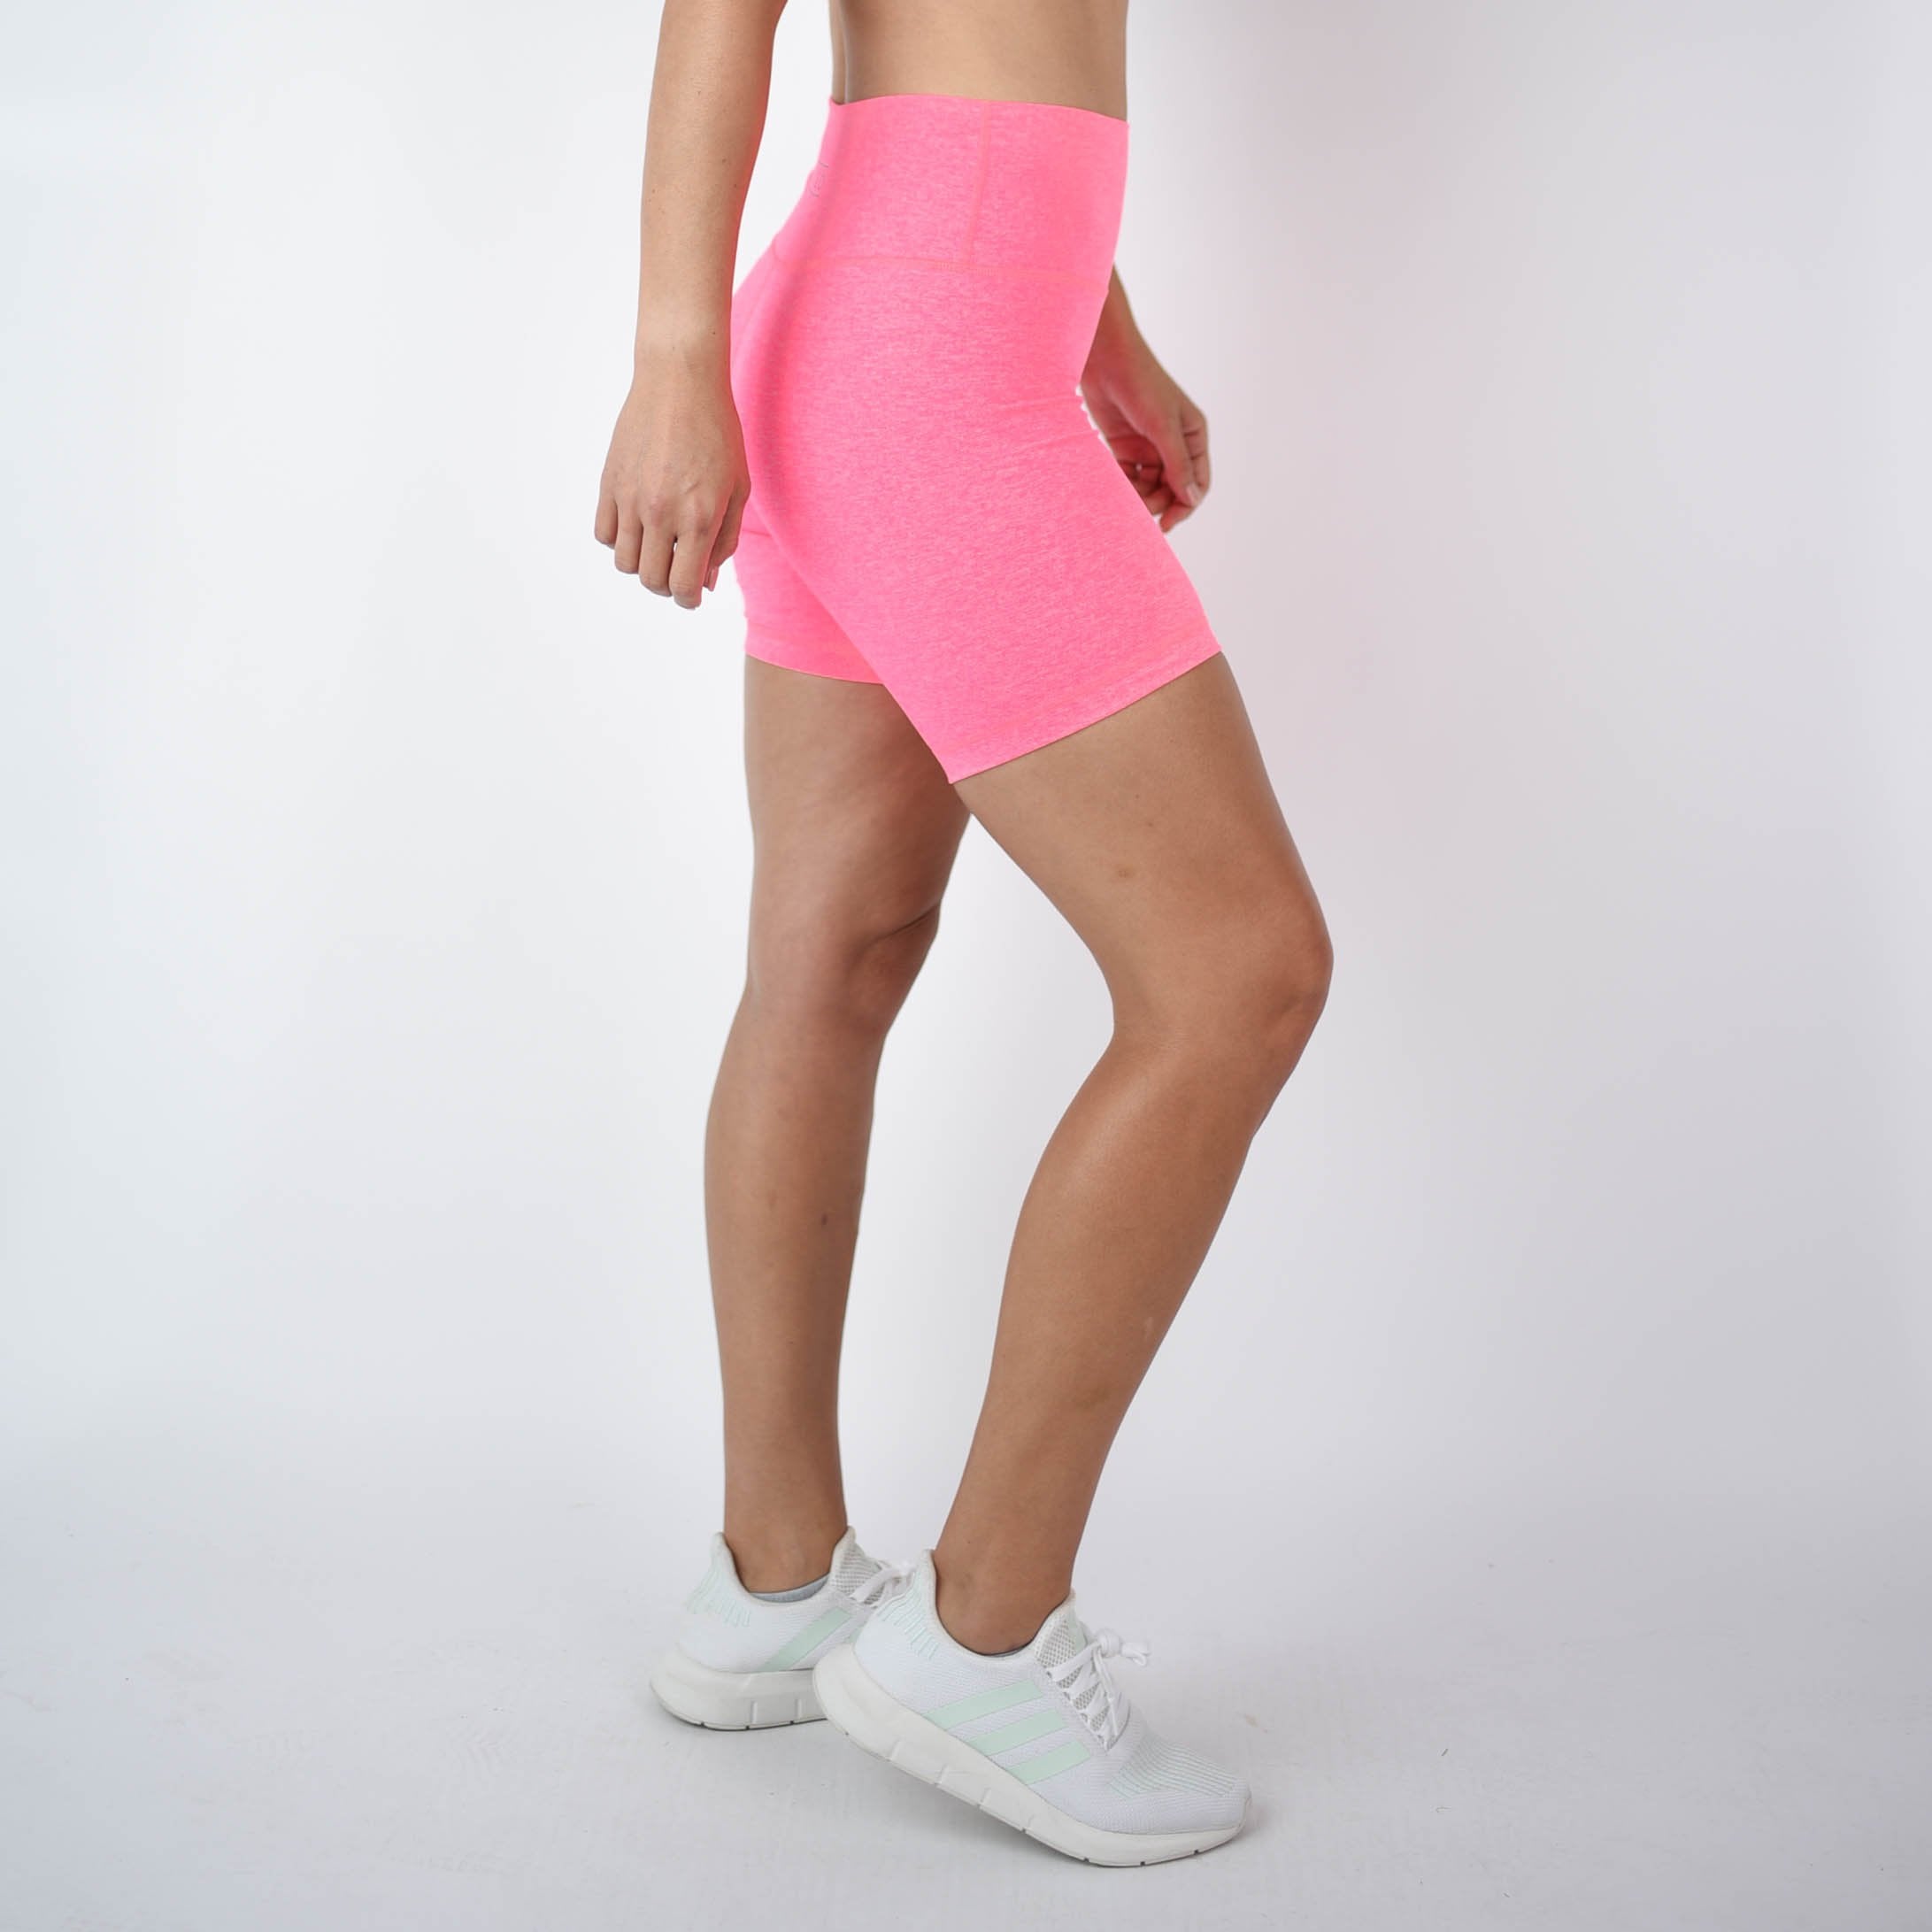 Heather Electric Pink Biker Shorts - 6" Inseam